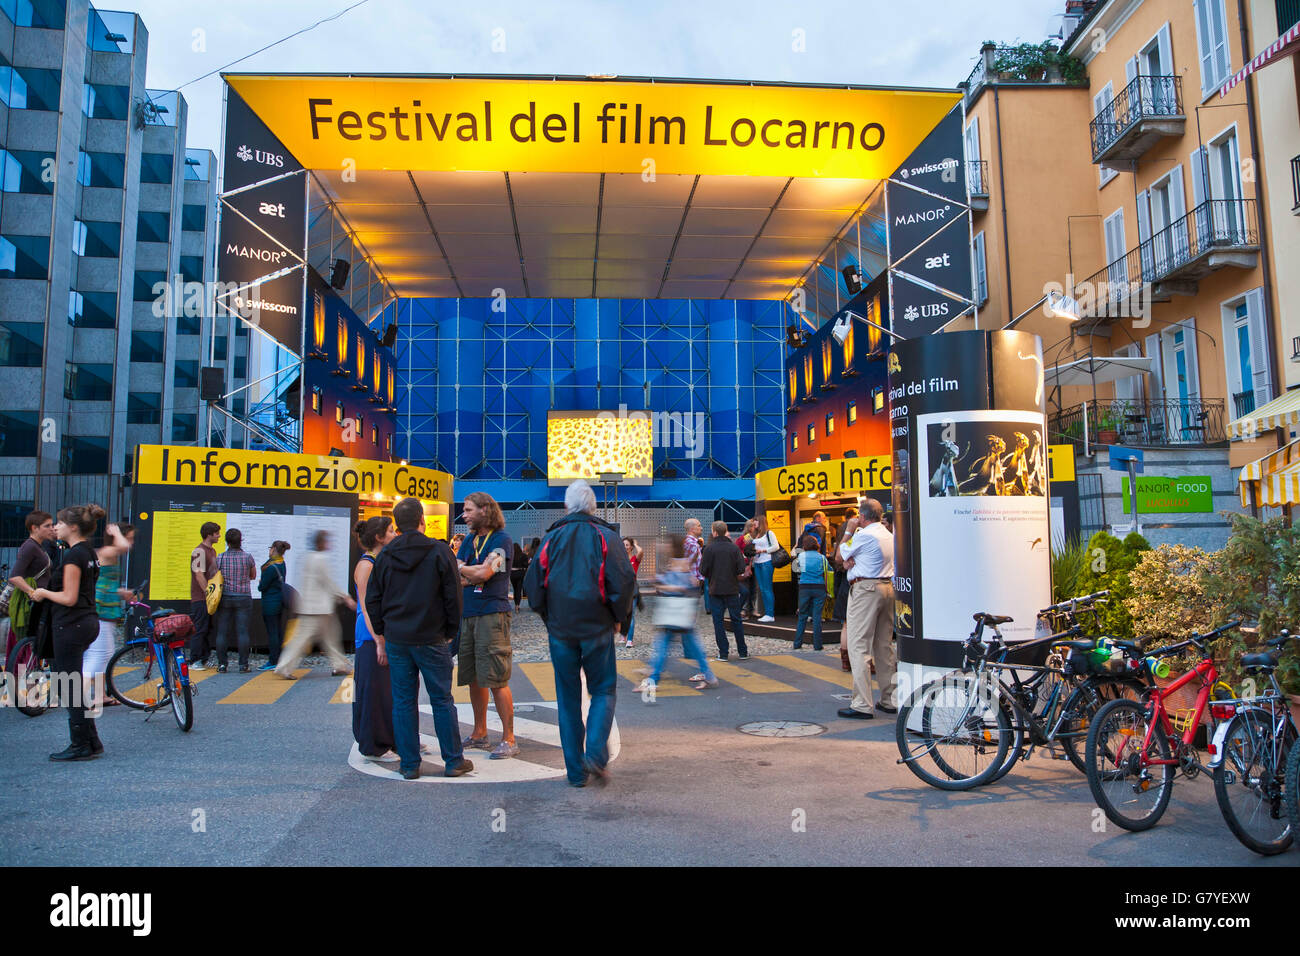 Locarno Film Festival, Festival del film, Ticino, Switzerland, Europe Stock Photo